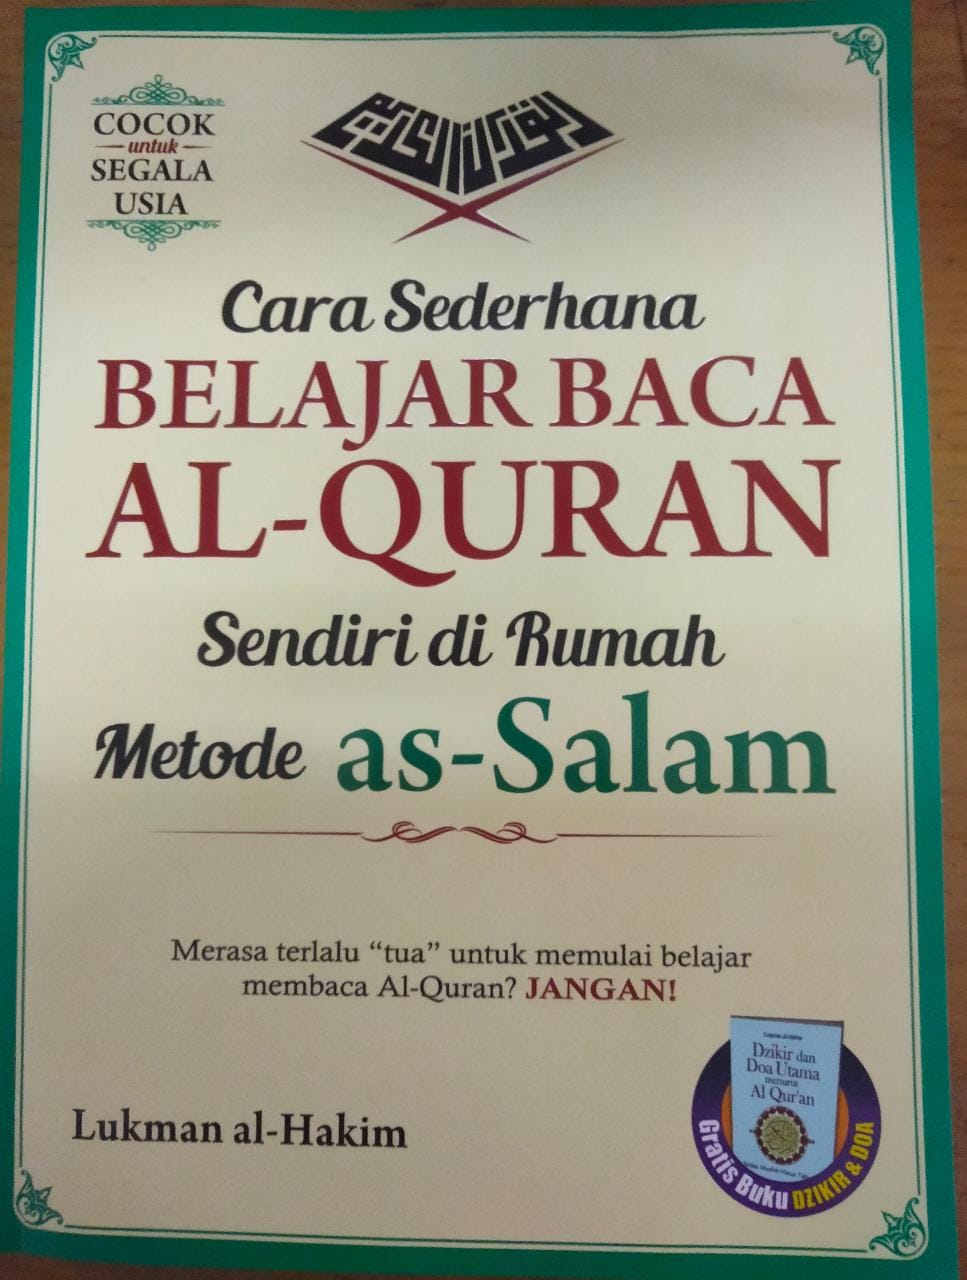 Cara sederhana latihan sendiri baca Al-Quran metode as-Salam